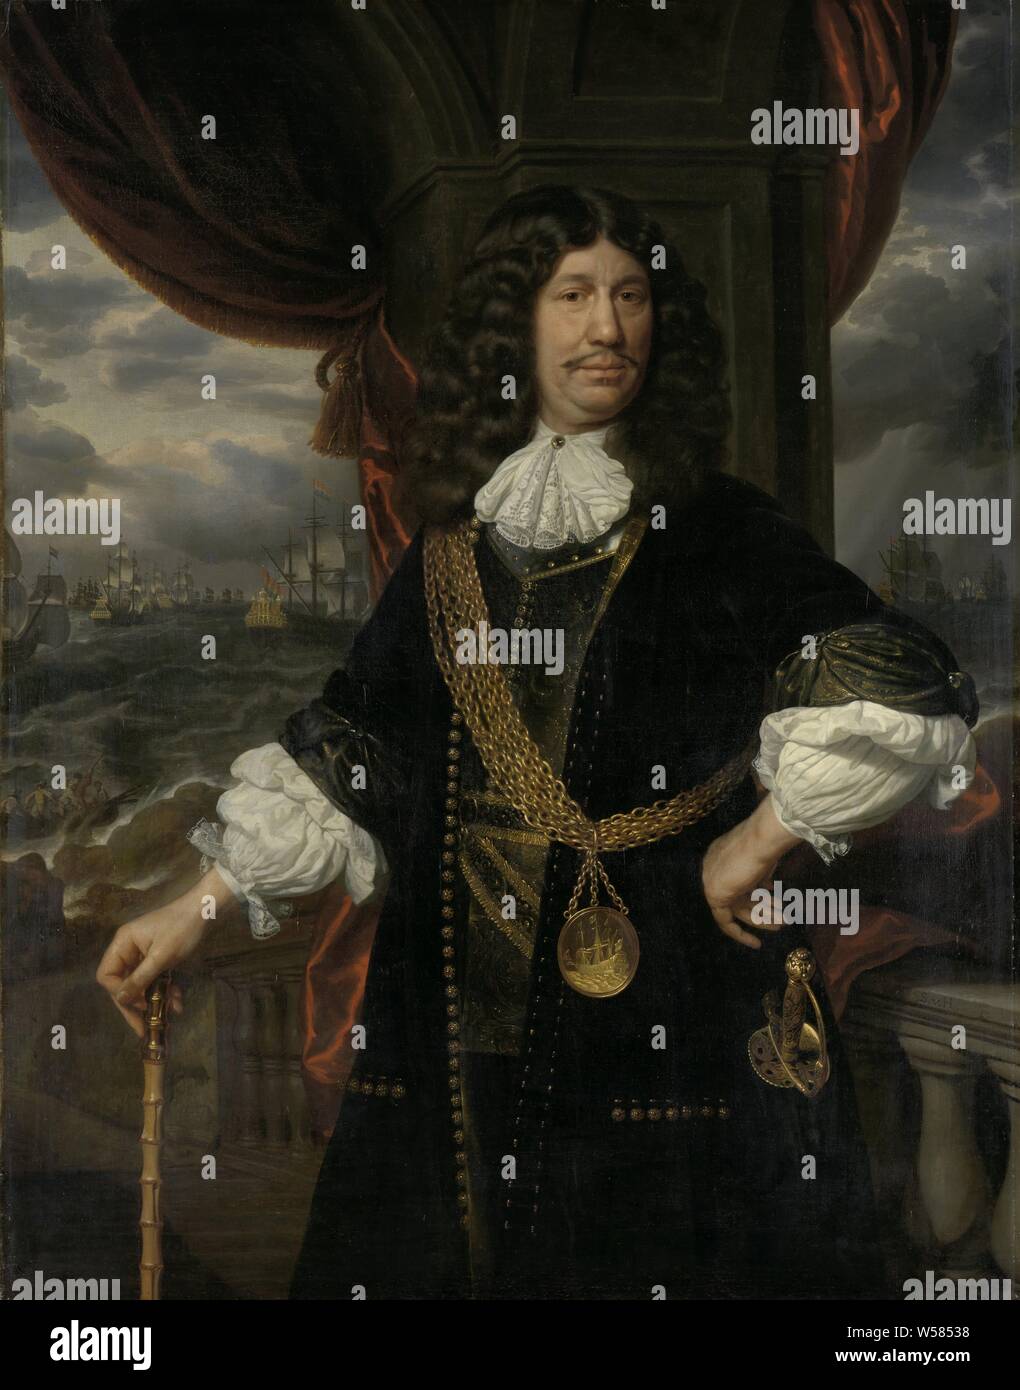 Retrato de Mattheus van den Broucke (1620-1685). Consejero de las Indias, Retrato de Mattheus van den Broucke, Consejo de Indias, adornada con la cadena de oro y la Medalla que la VOC le dio en 1670. En 1677 Alcalde de Dordrecht. De pie, a mitad de camino, en frente de una balaustrada. En la mano derecha un bastón, la mano izquierda en el lateral. En el fondo una marina con veleros, Mattheus van den Broucke, Dutch East India Company, Samuel van Hoogstraten, 1670 - 1678, lienzo, pintura de aceite (pintura), h 142 cm × W 111 cm d de 10,5 cm. Foto de stock